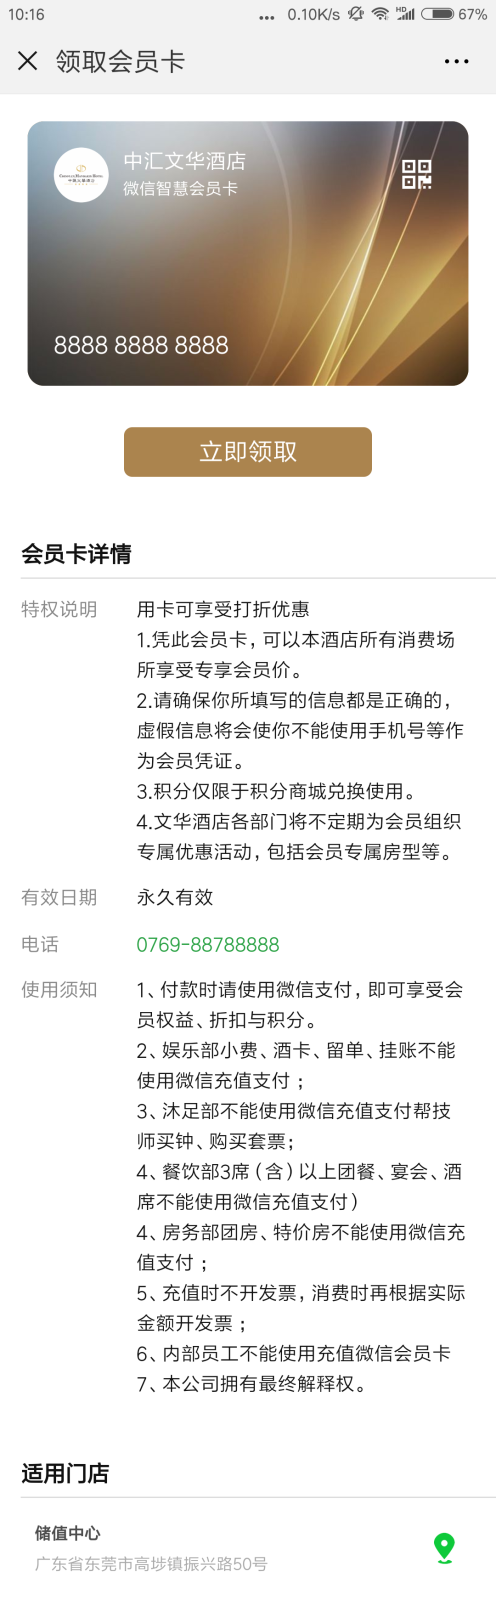 Screenshot_2018-08-23-10-16-33-673_com.tencent.mm.png